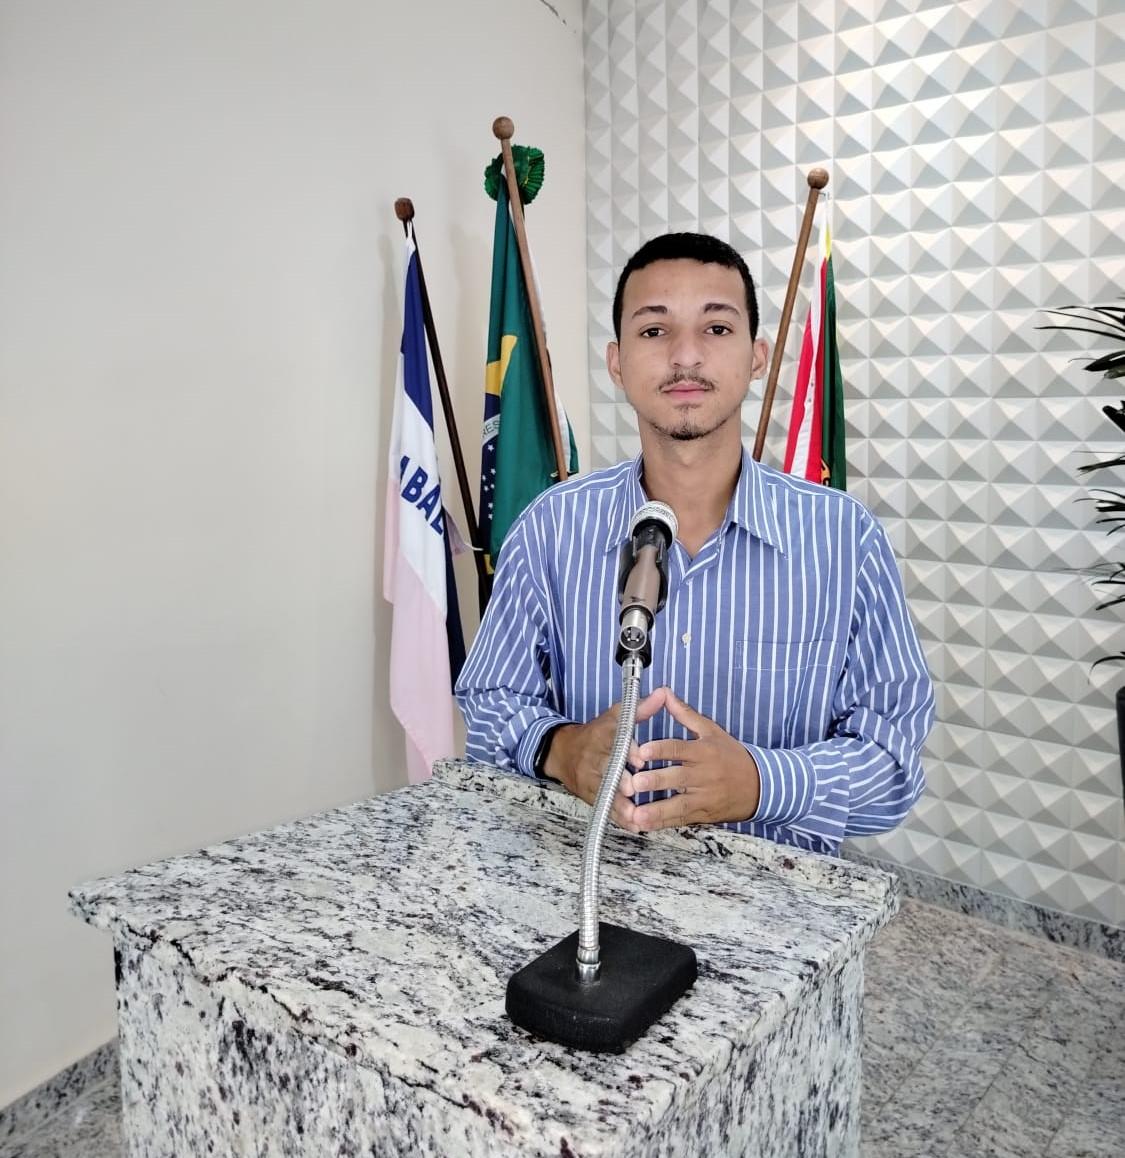 Jaelson Jr lança pré-candidatura a vereador pelo MDB em Ponto Belo, ES